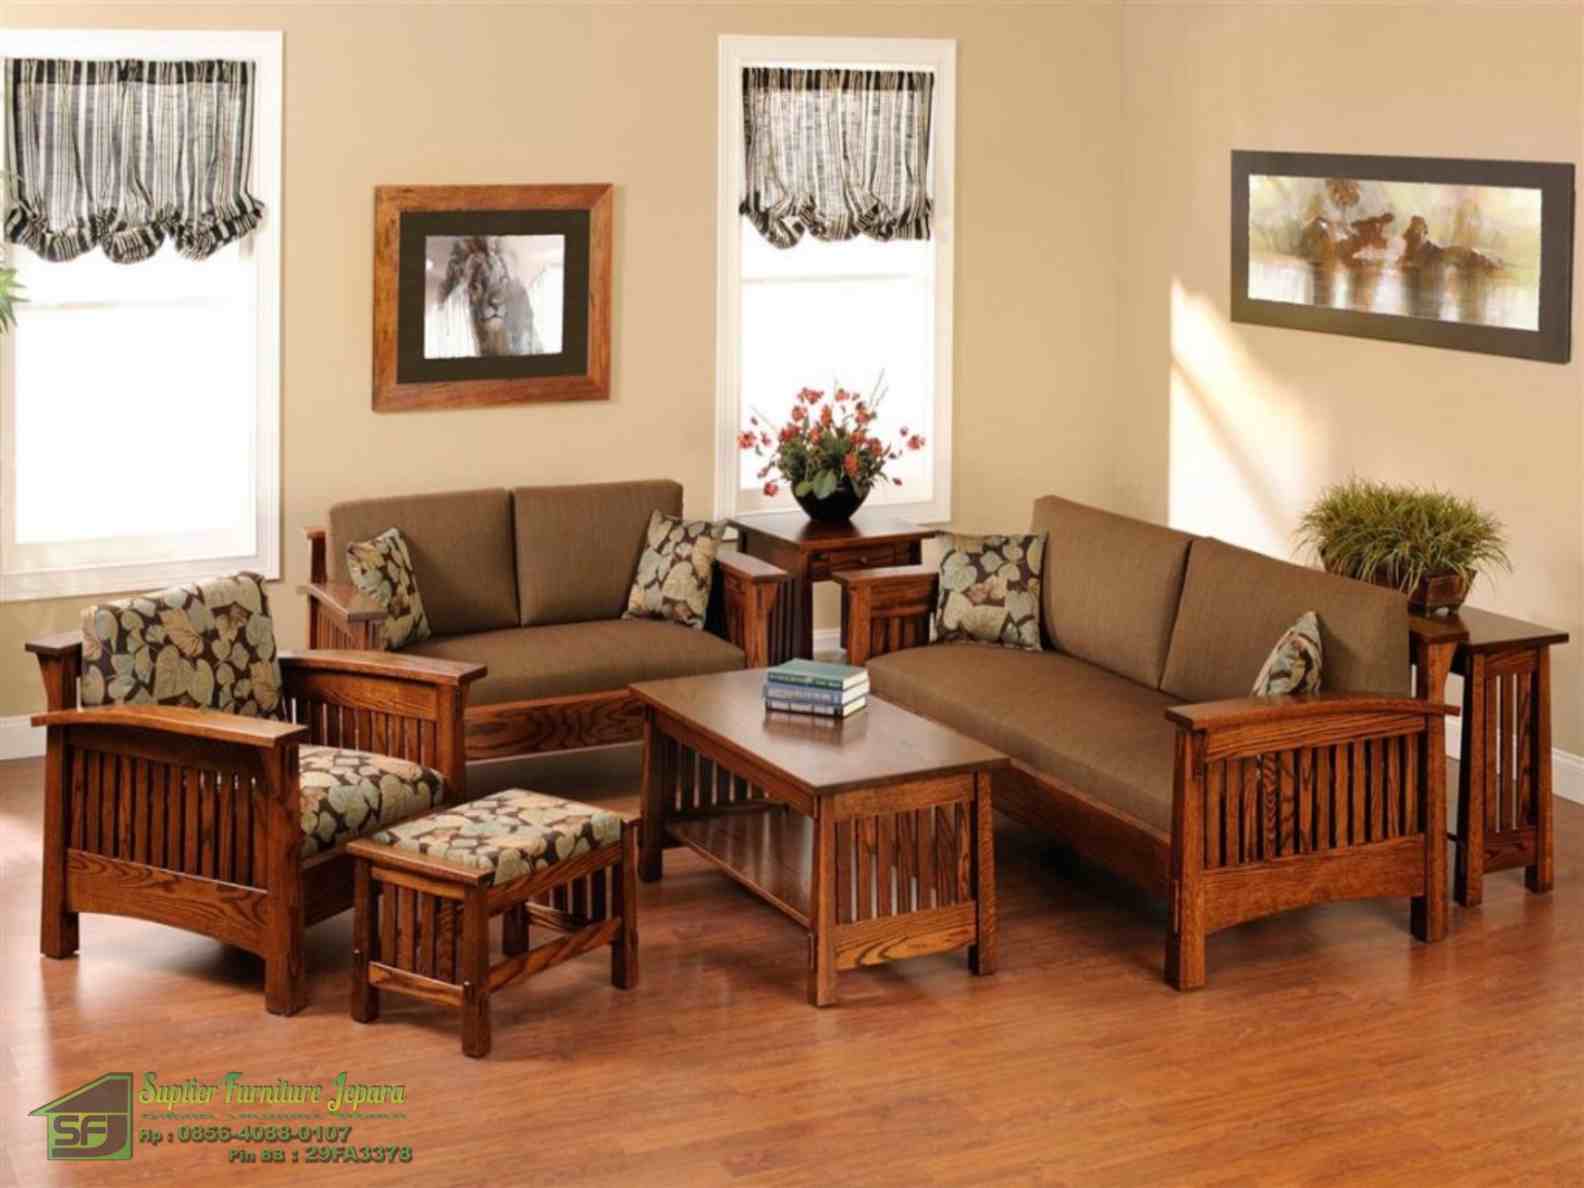 Desain Interior Ruang Tamu Minimalis Tanpa Sofa Interior Rumah